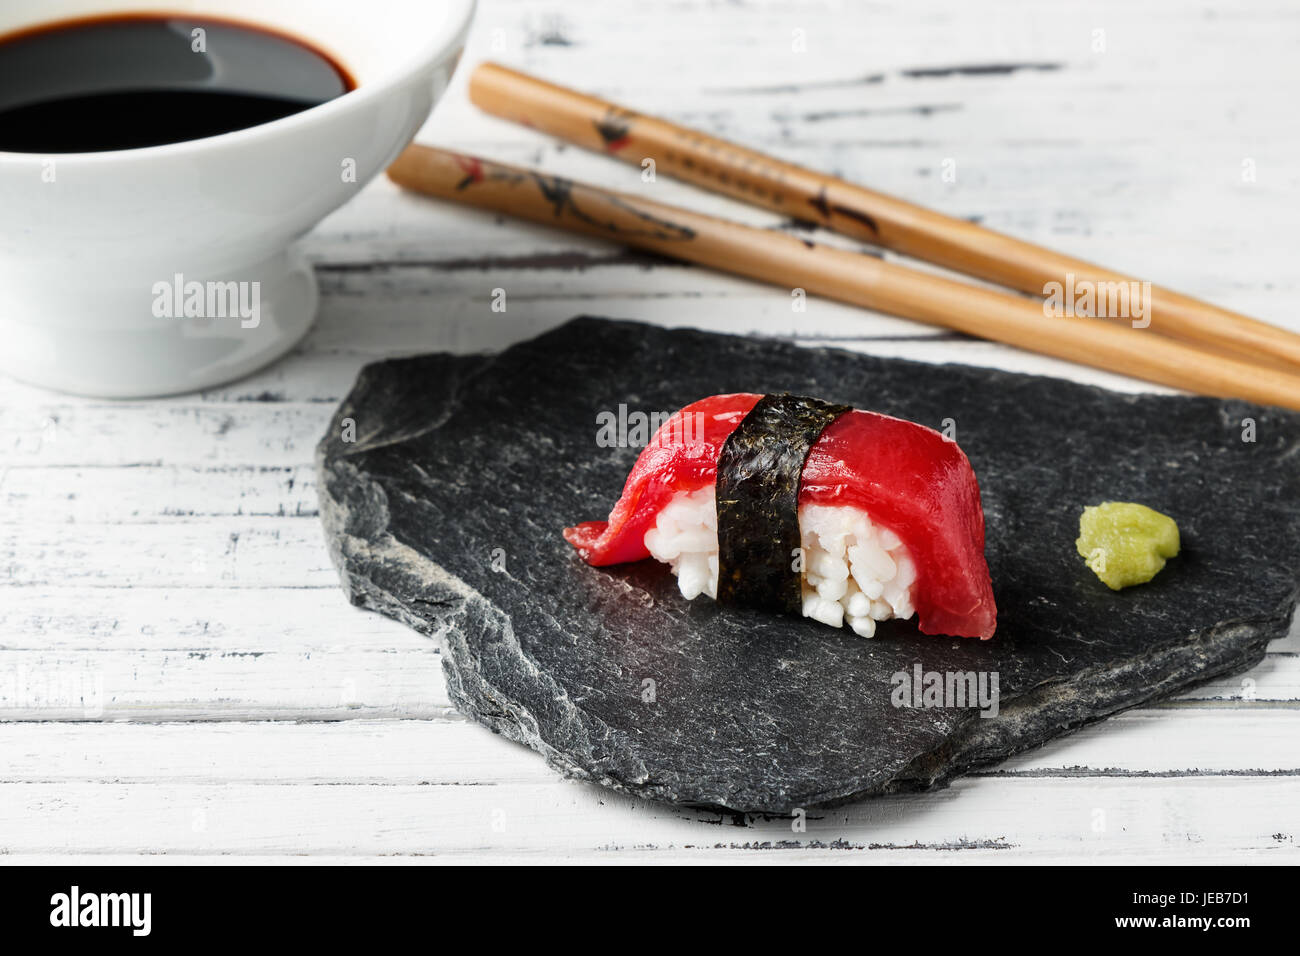 El nigiri de atún rojo con alga nori y wasabi pegar en piedra pizarra. Los  palillos y el tazón con la salsa de soja en el fondo de casco de madera  blanca.